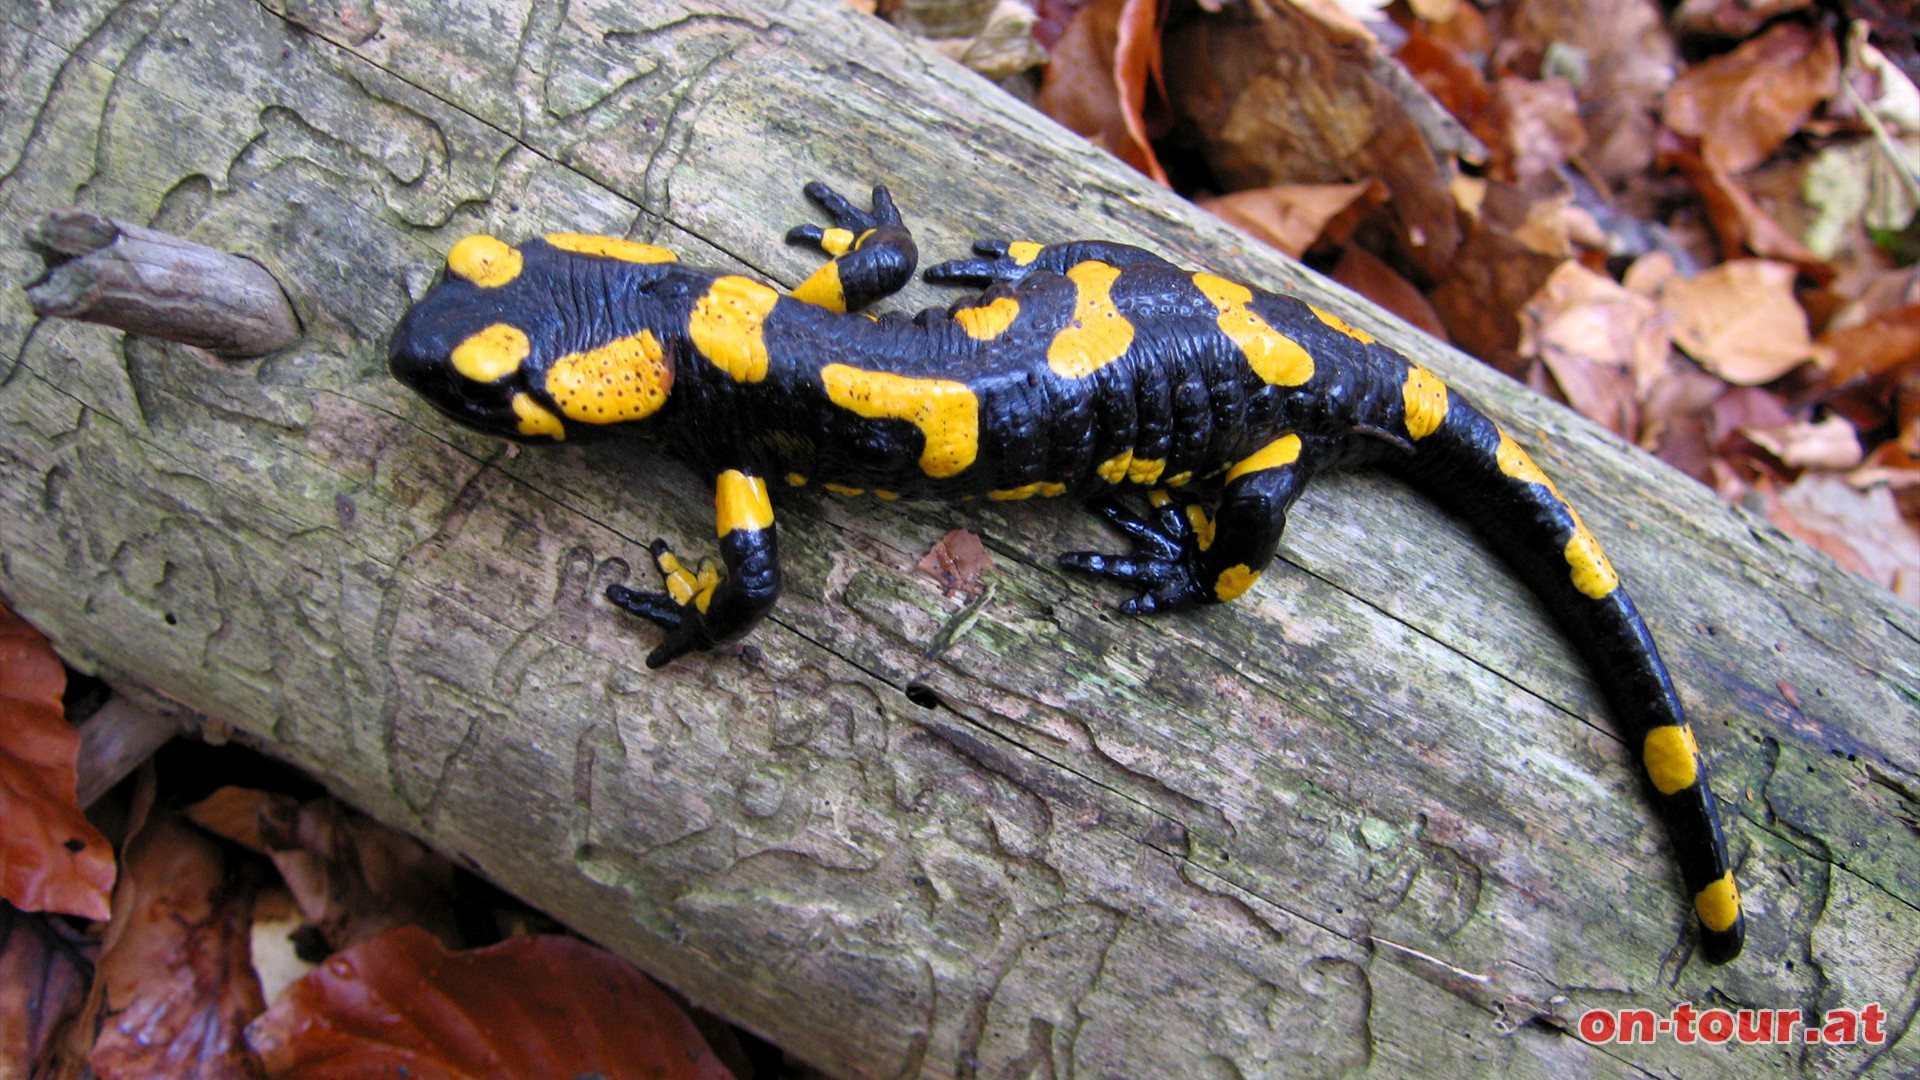 Jedes Tier hat ein individuelles schwarz-gelbes Fleckenmuster.